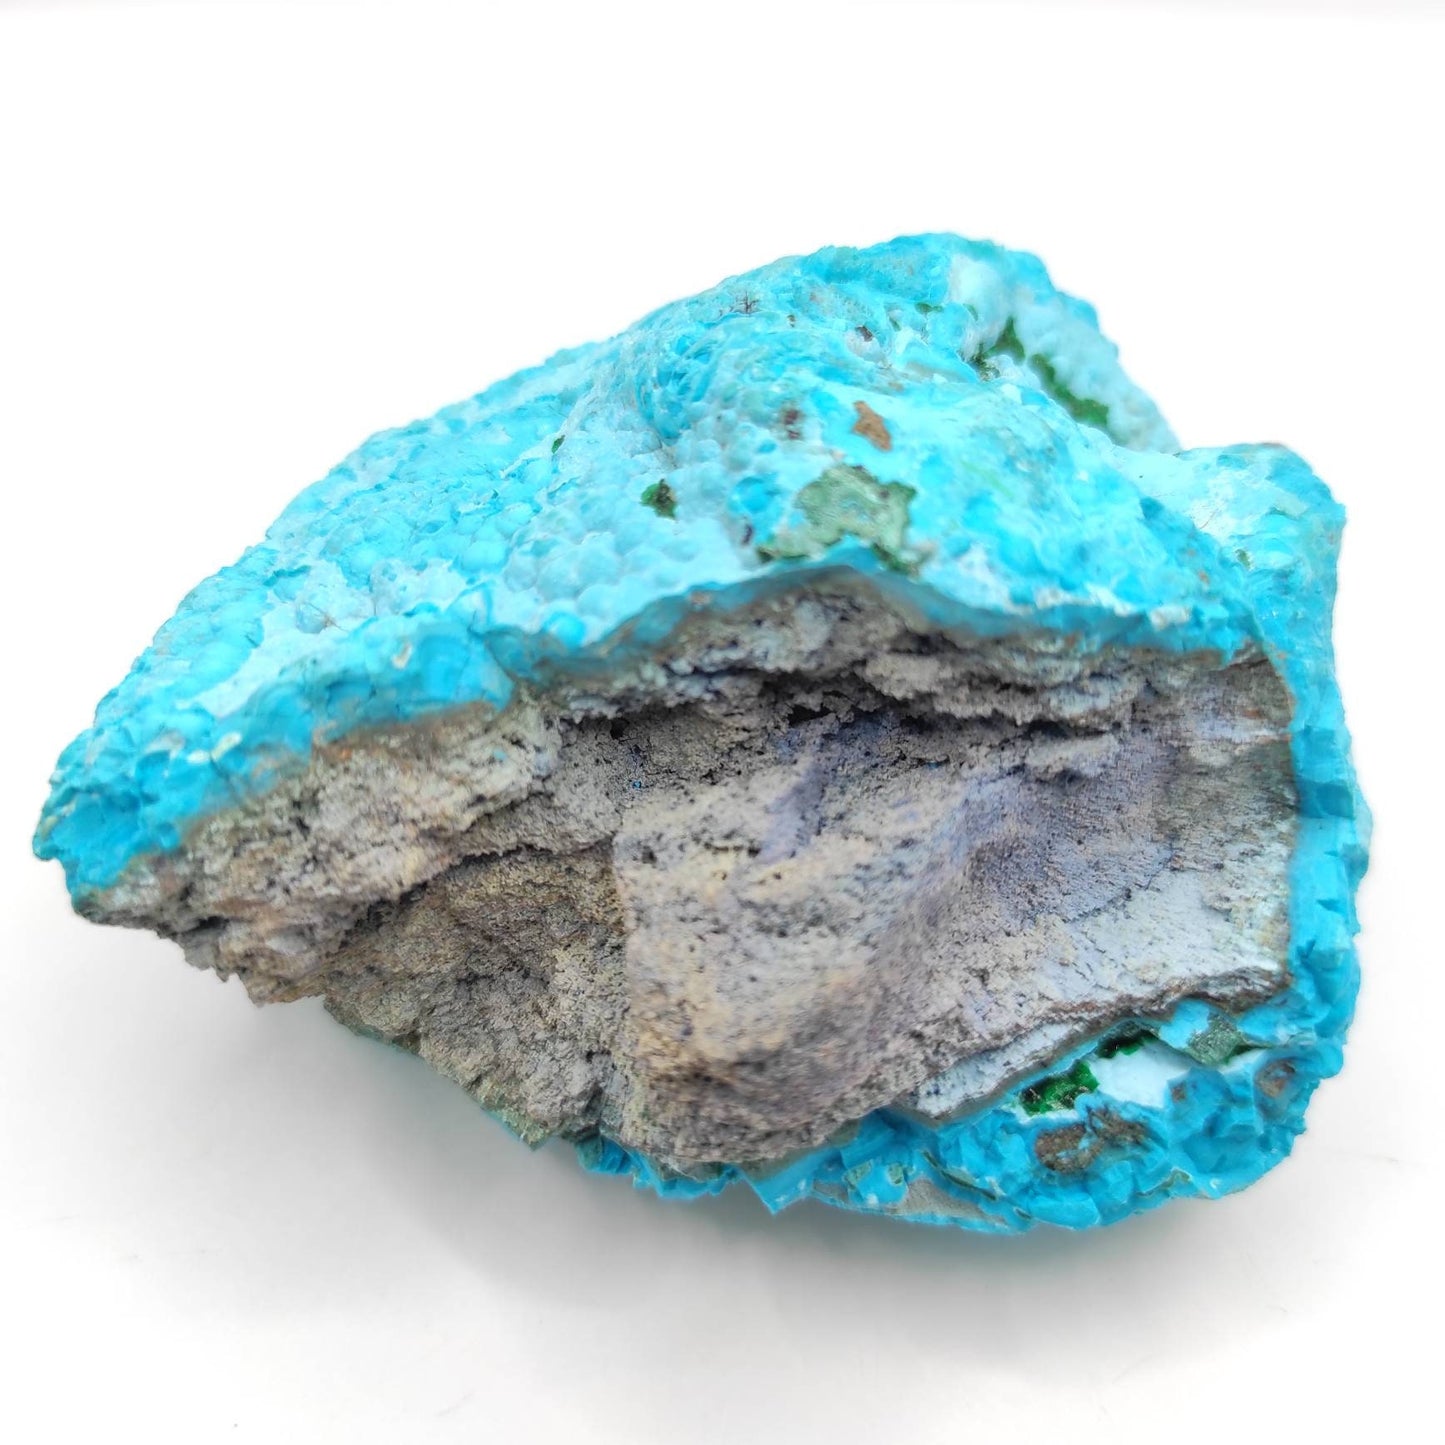 148g Blue Chrysocolla Crystal Mineral Specimen Natural Blue Chrysocolla Congo Raw Minerals Rough Unique Natural Raw Crystal Cluster Specimen